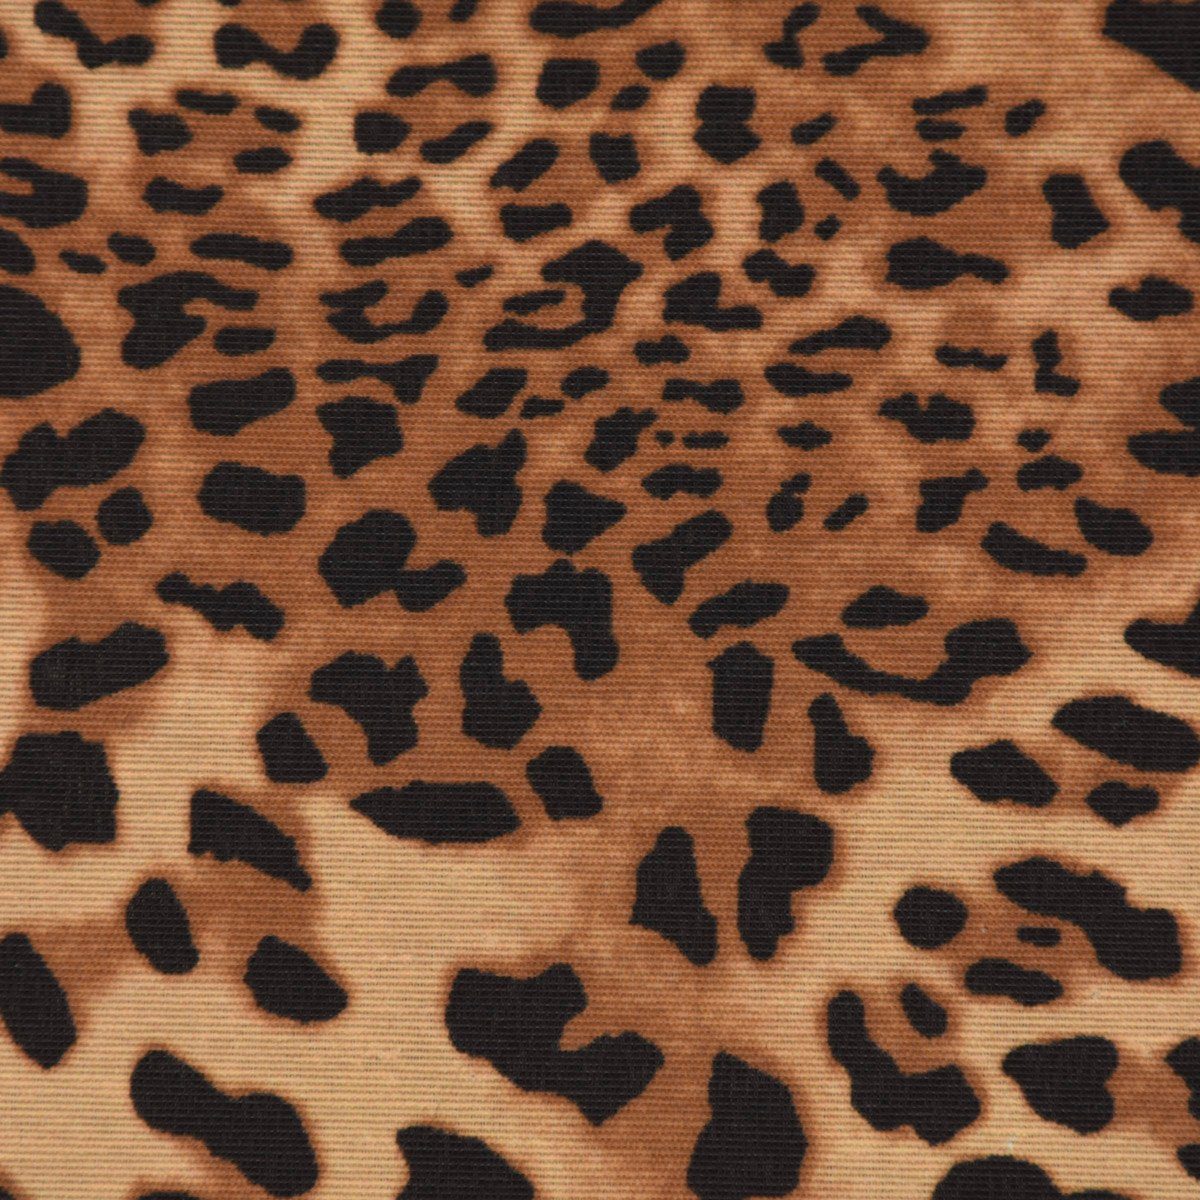 Leopardenhaut Größen braun div. Dekokissen SCHÖNER LEBEN. SCHÖNER Kissenhülle Leo-Skin LEBEN.